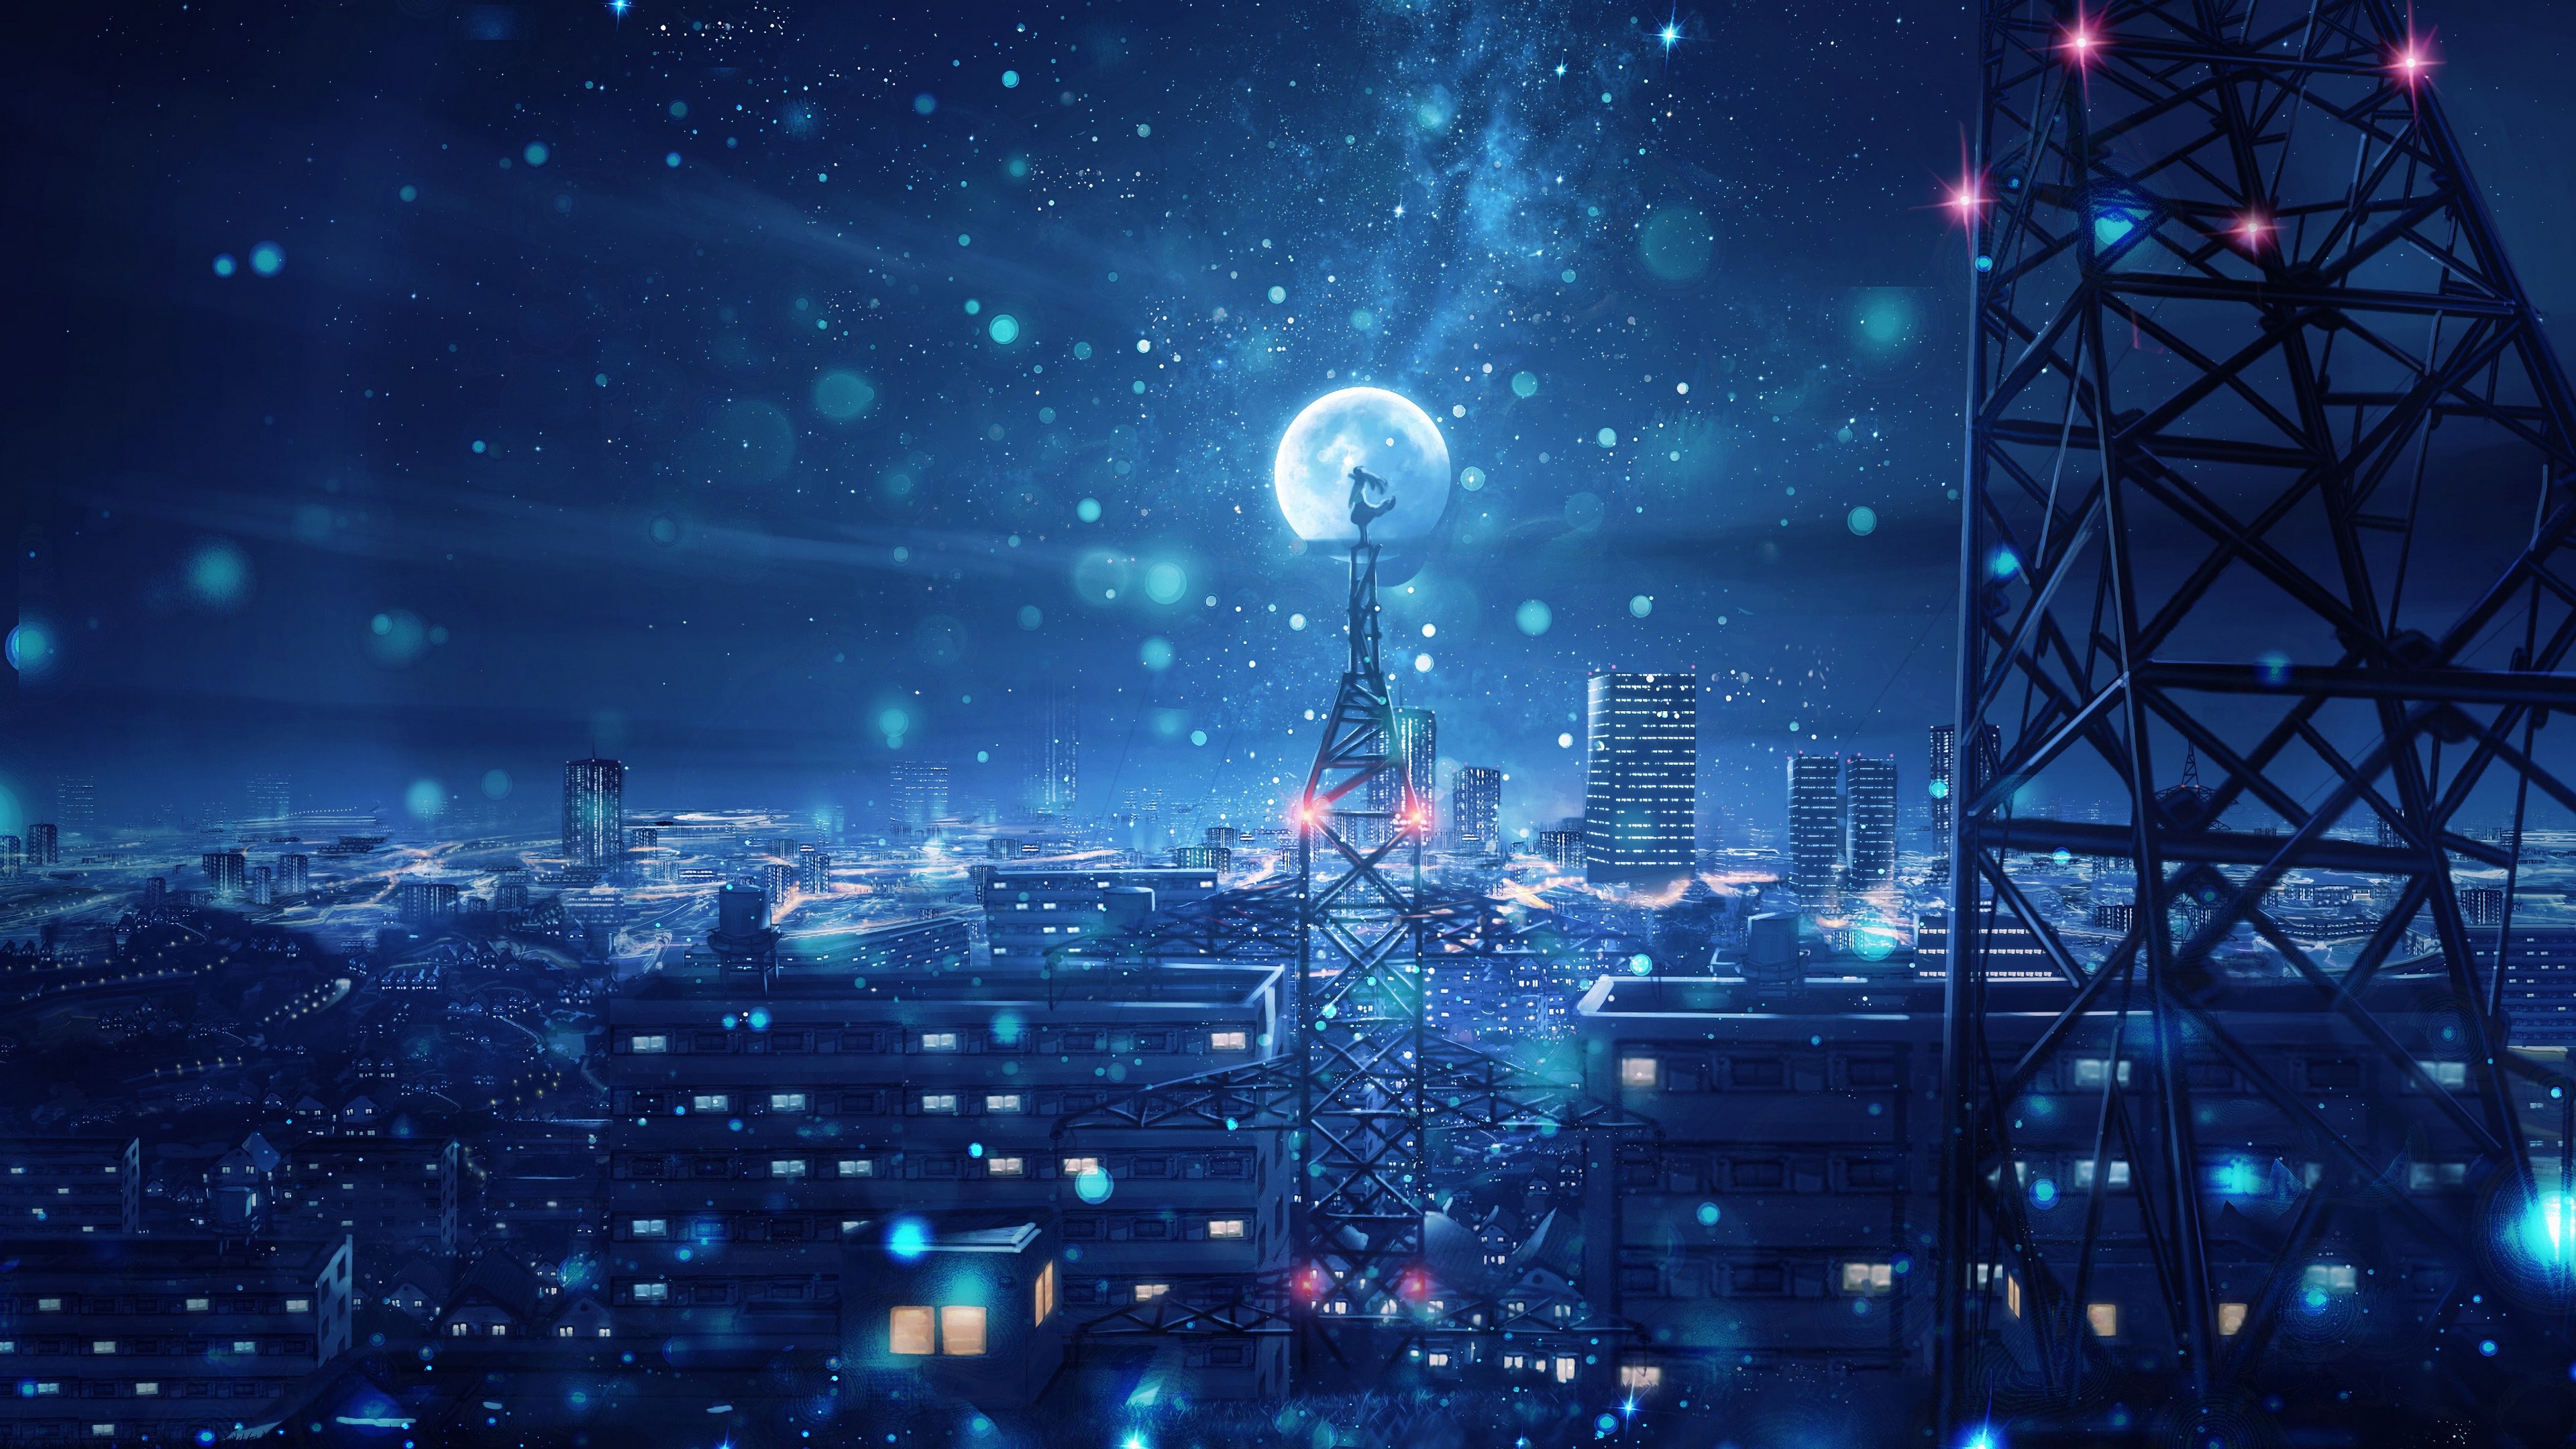 Anime Night Scenery: Bối cảnh đêm luôn có sức hấp dẫn đặc biệt. Với anime, bạn sẽ có những hình ảnh đầy màu sắc và kỳ ảo của thành phố, biển hay núi đêm. Sự kết hợp giữa hoa màu đêm tối và những phong cảnh tuyệt đẹp chắc chắn sẽ khiến bạn không muốn rời mắt khỏi màn hình.